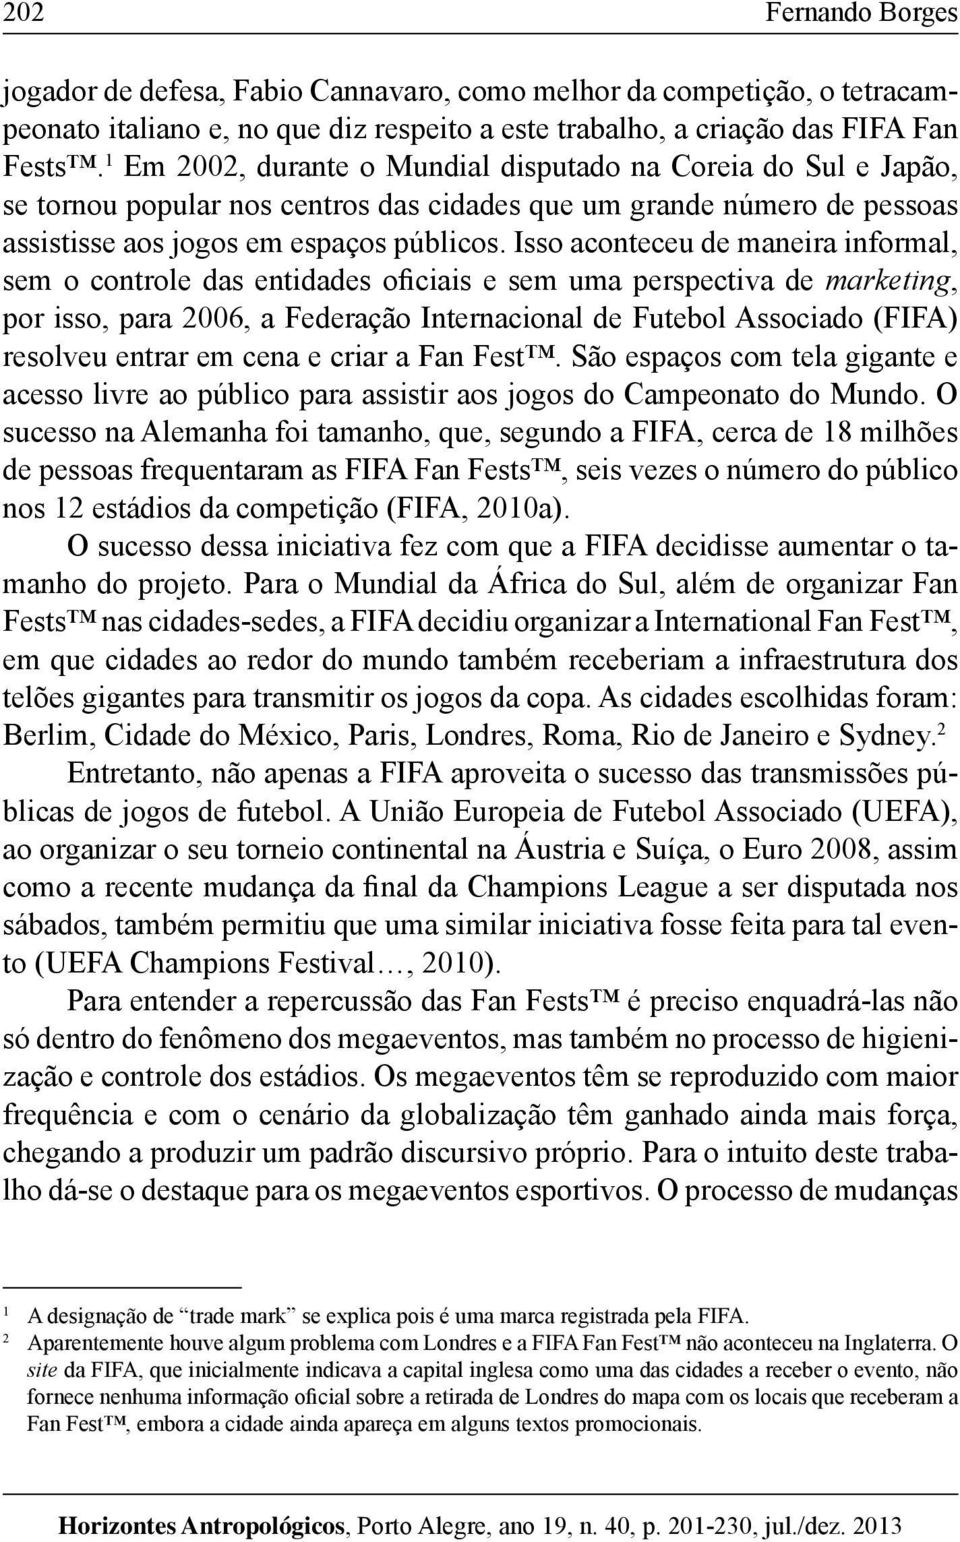 Isso aconteceu de maneira informal, sem o controle das entidades oficiais e sem uma perspectiva de marketing, por isso, para 2006, a Federação Internacional de Futebol Associado (FIFA) resolveu